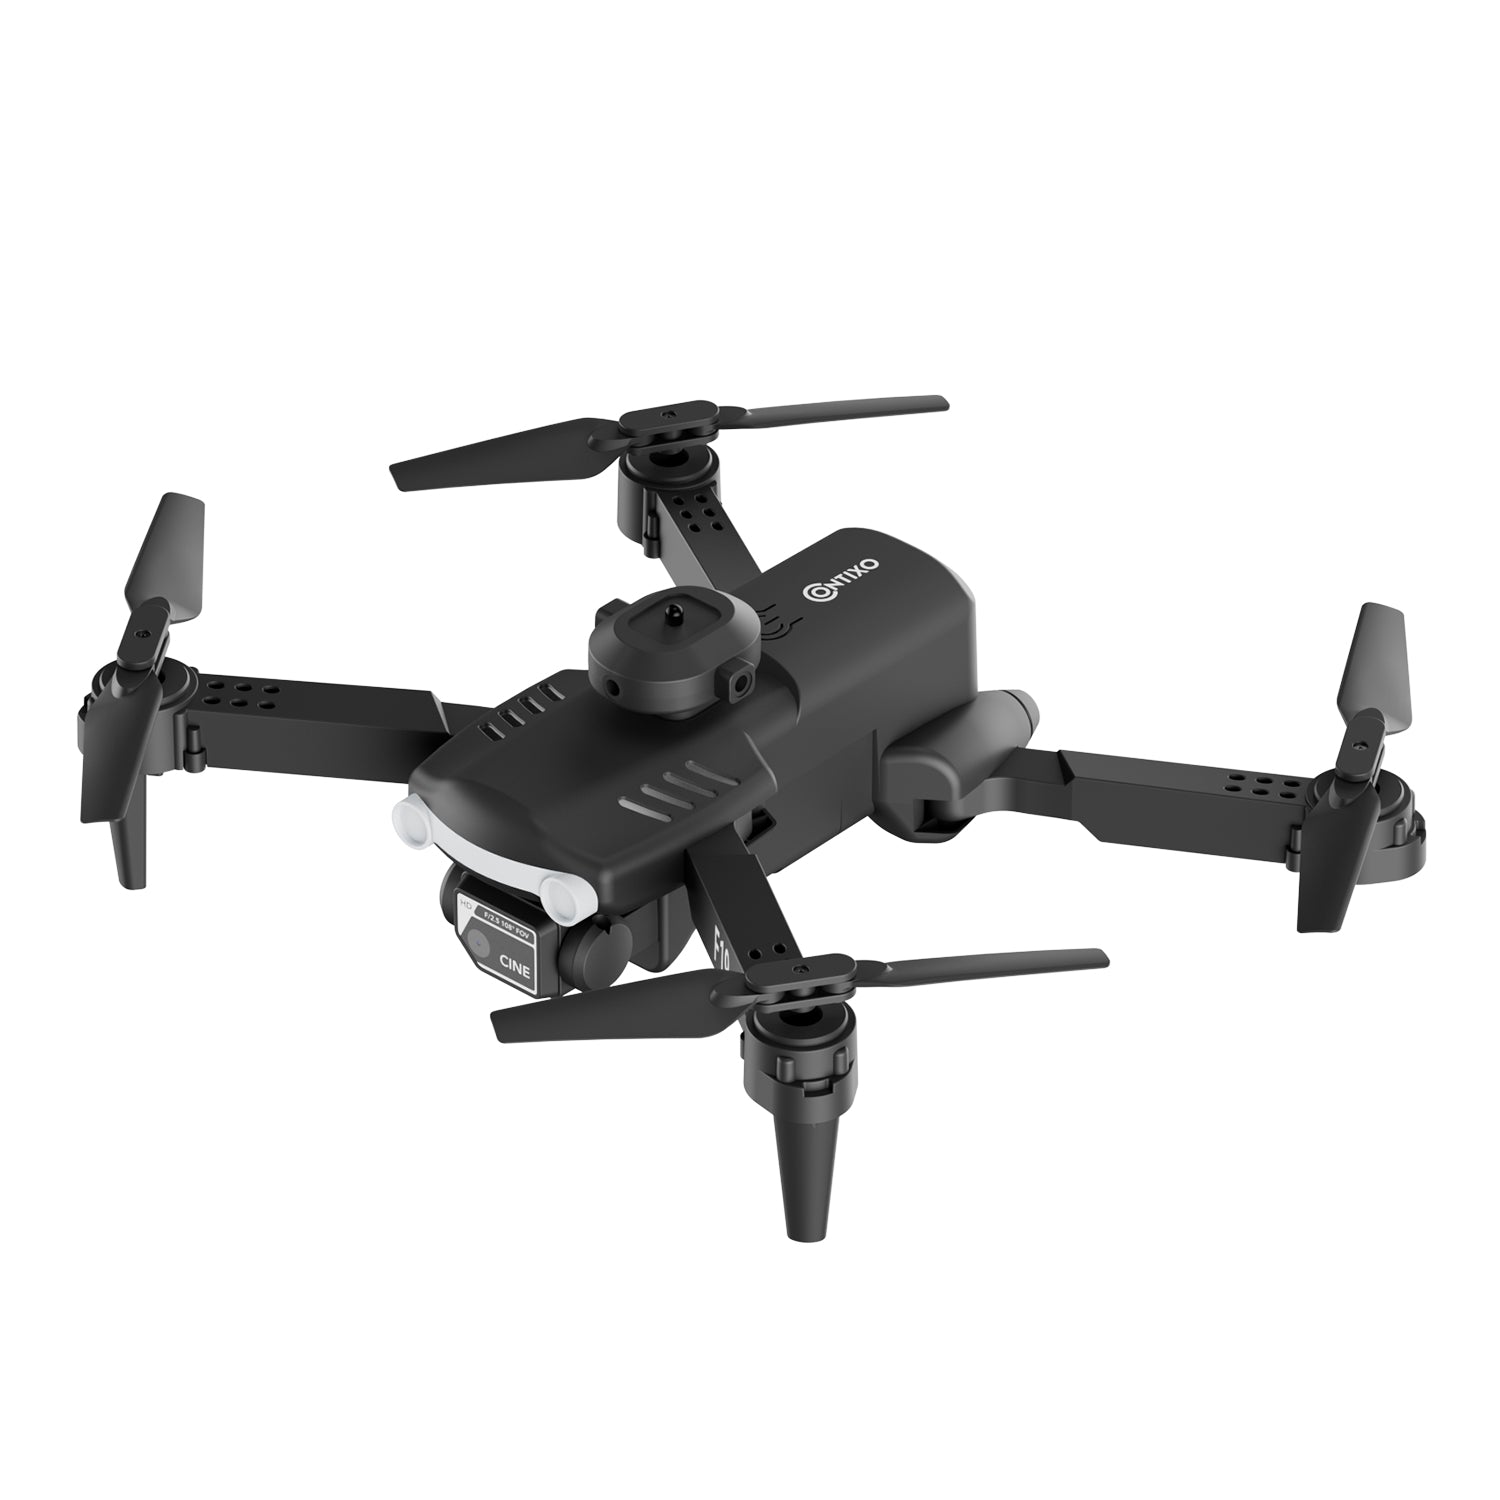 Contixo F19 Midnight Drone with 1080P Camera